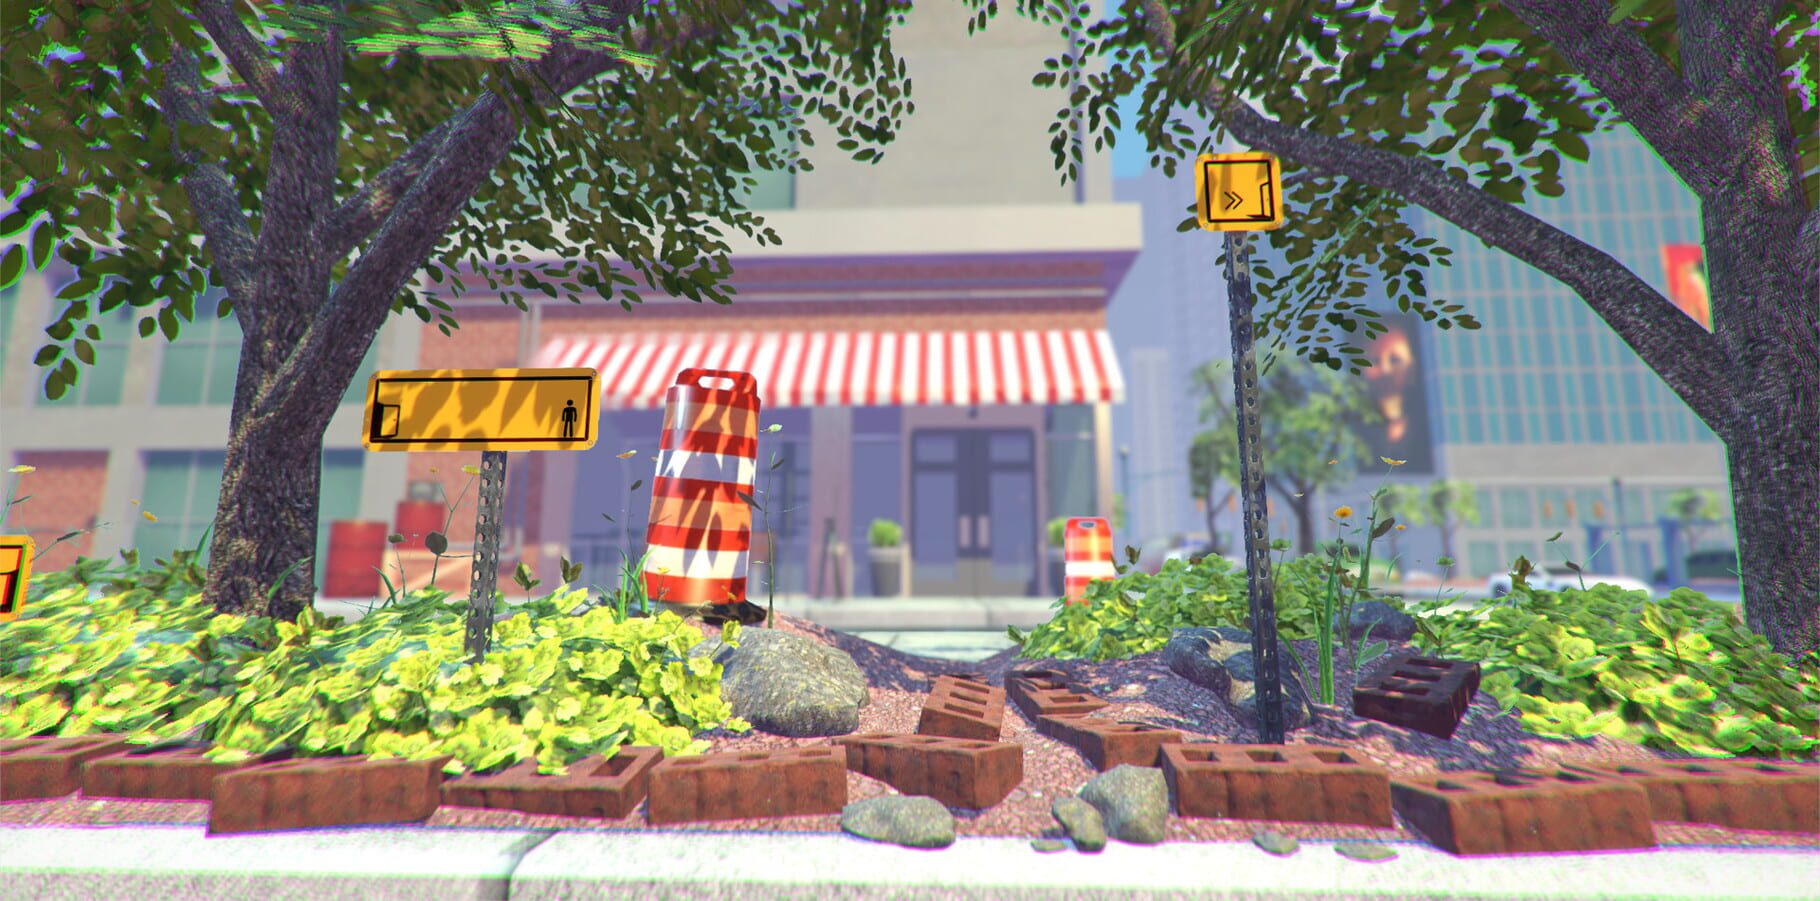 The Pedestrian screenshots